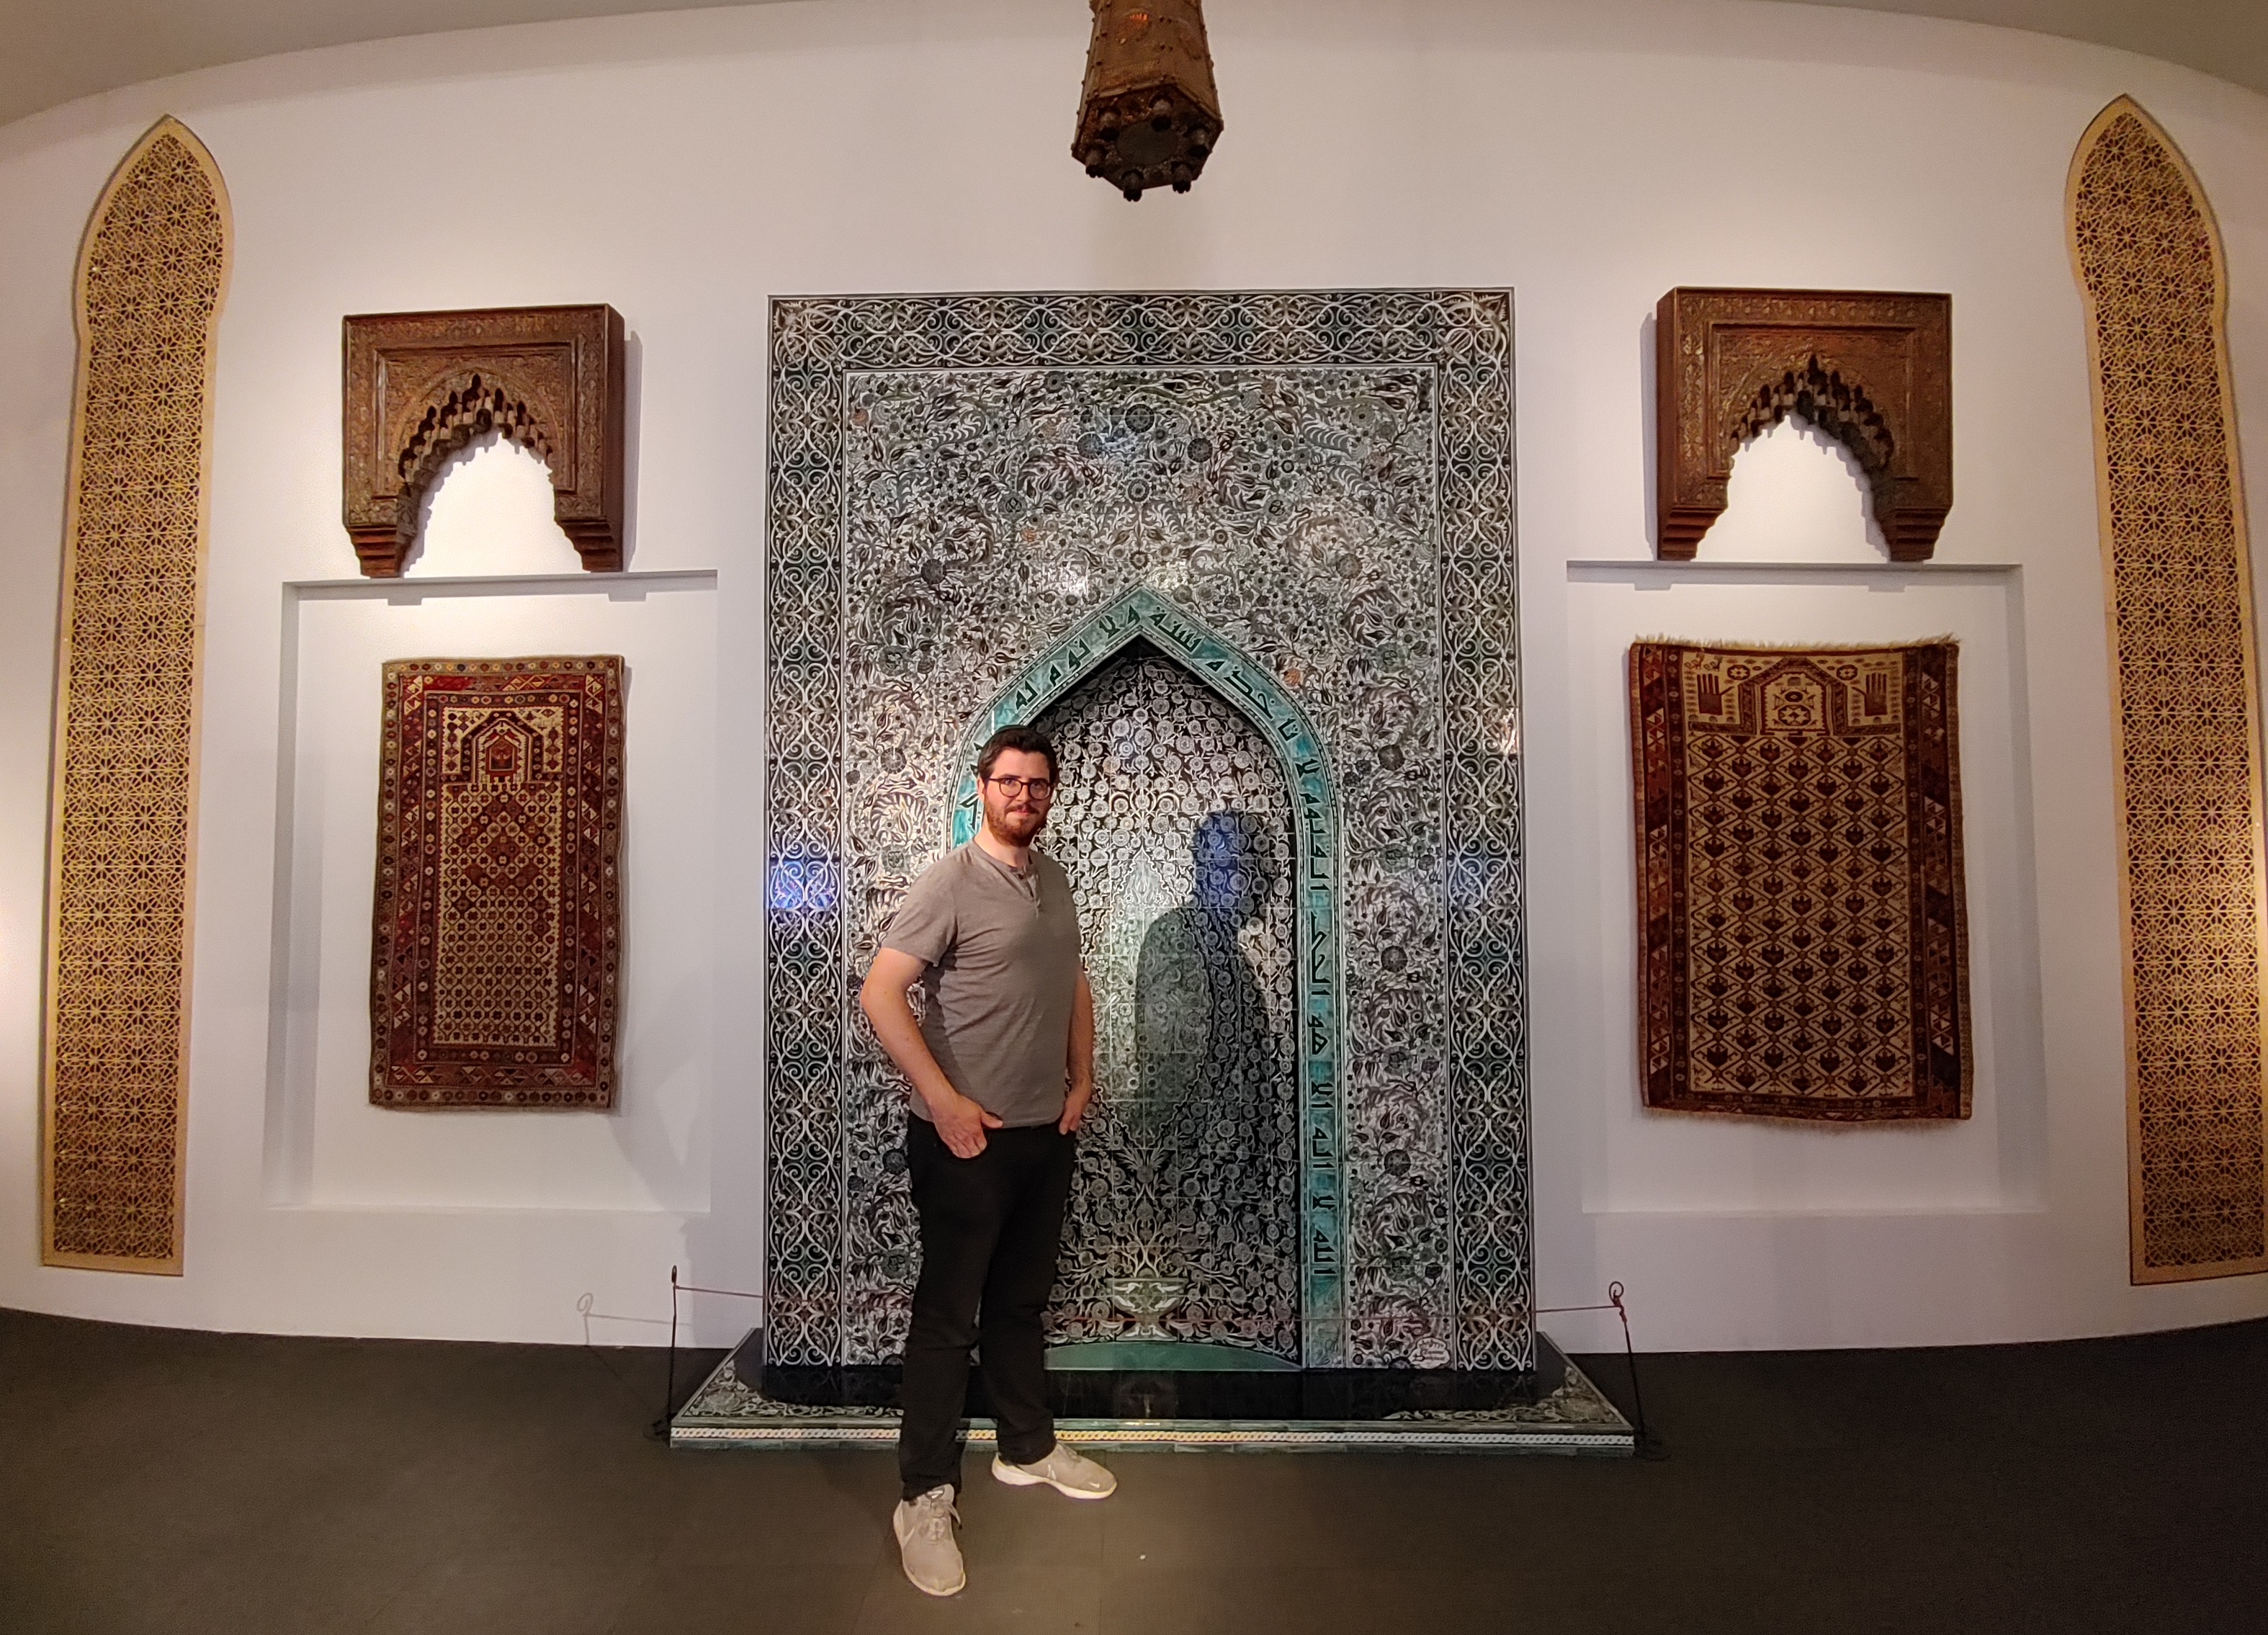 Posing at the mihrab